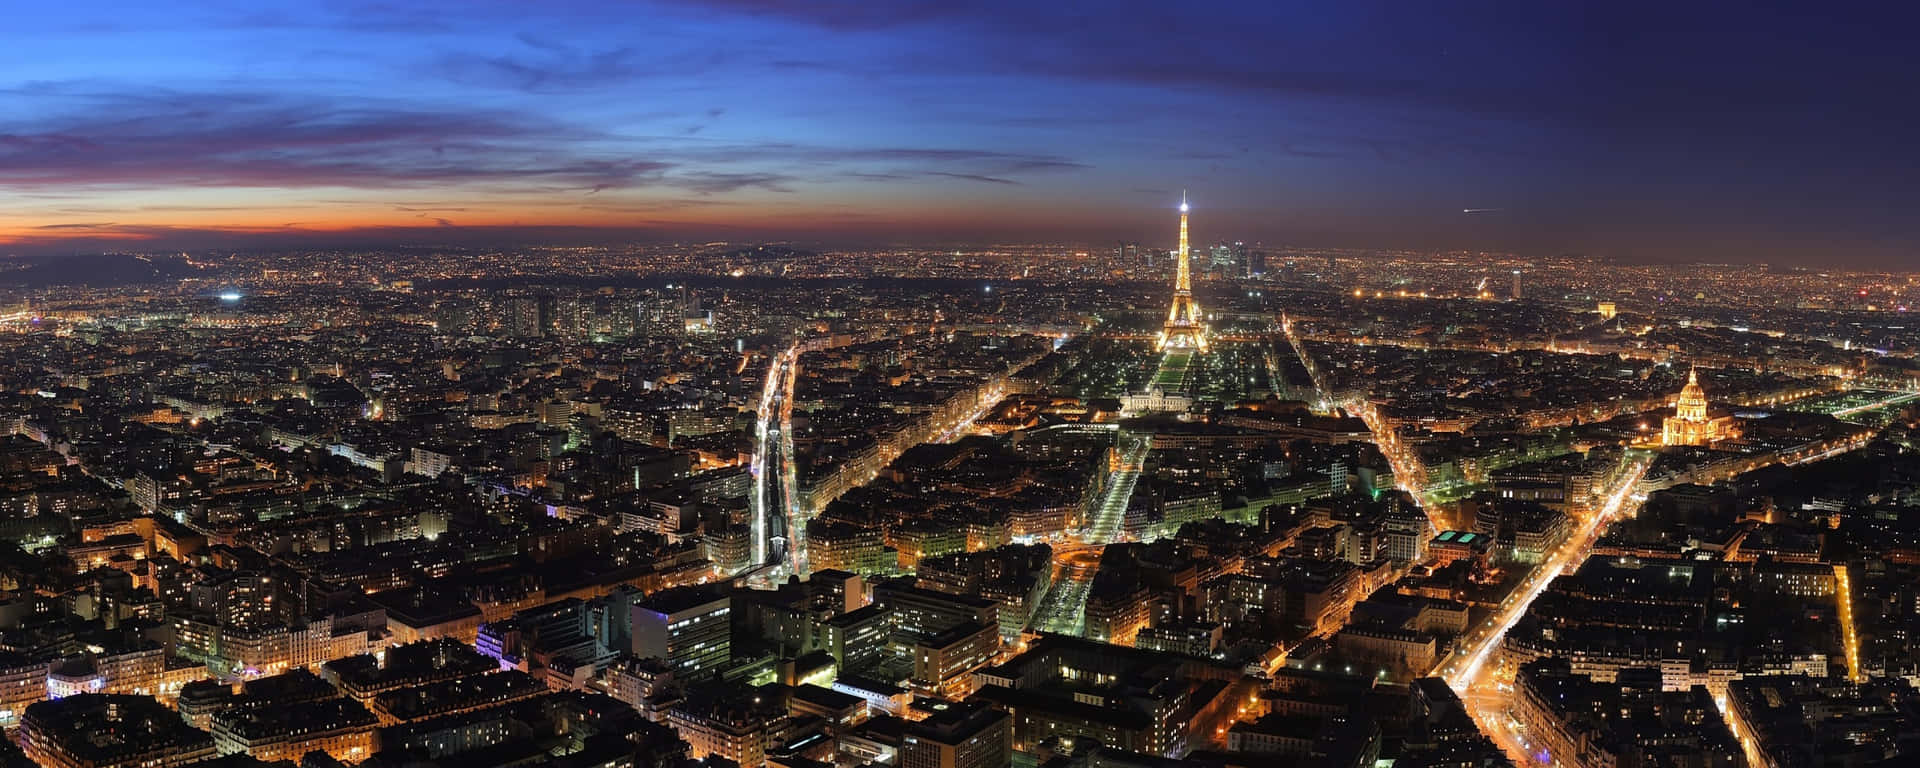 Eiffeltorneti Månskenet På Natten I Paris, Frankrike. Wallpaper